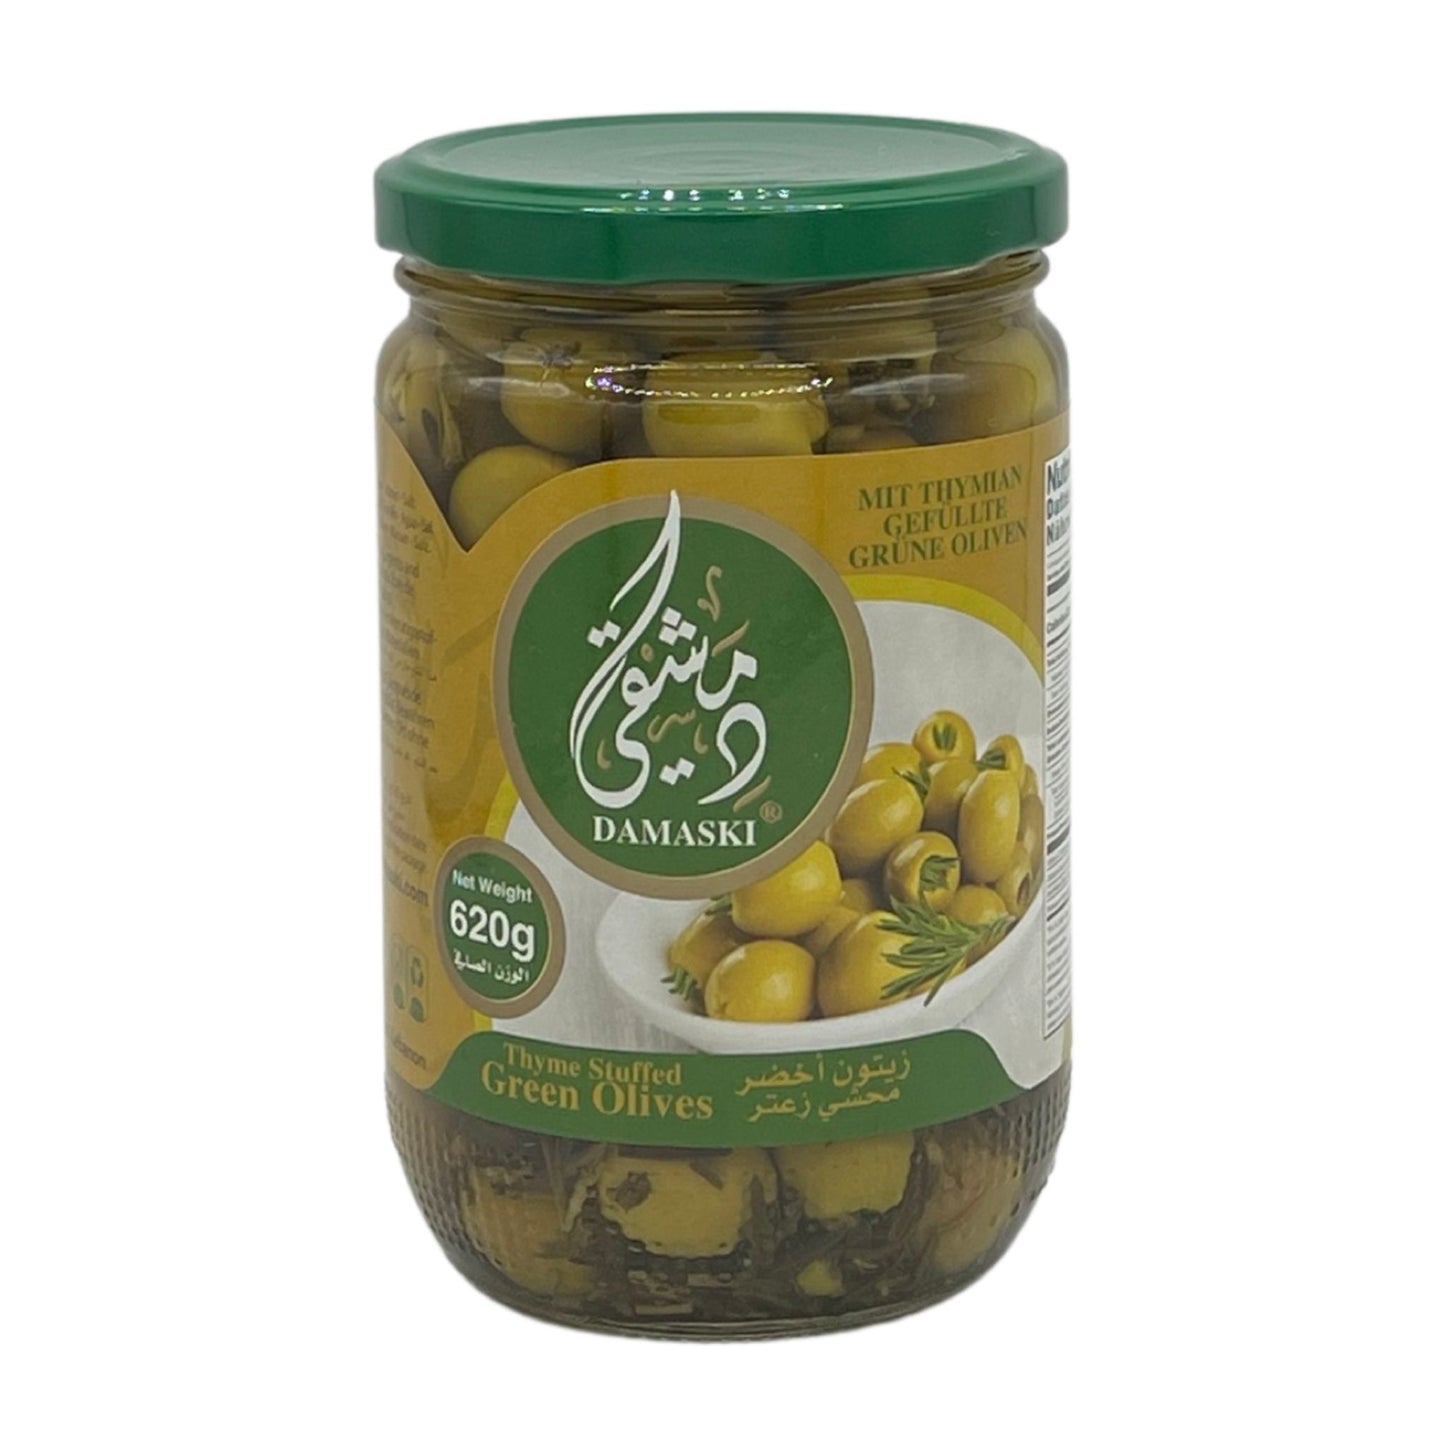 Damaski Green Olive Salkini 620 Grams